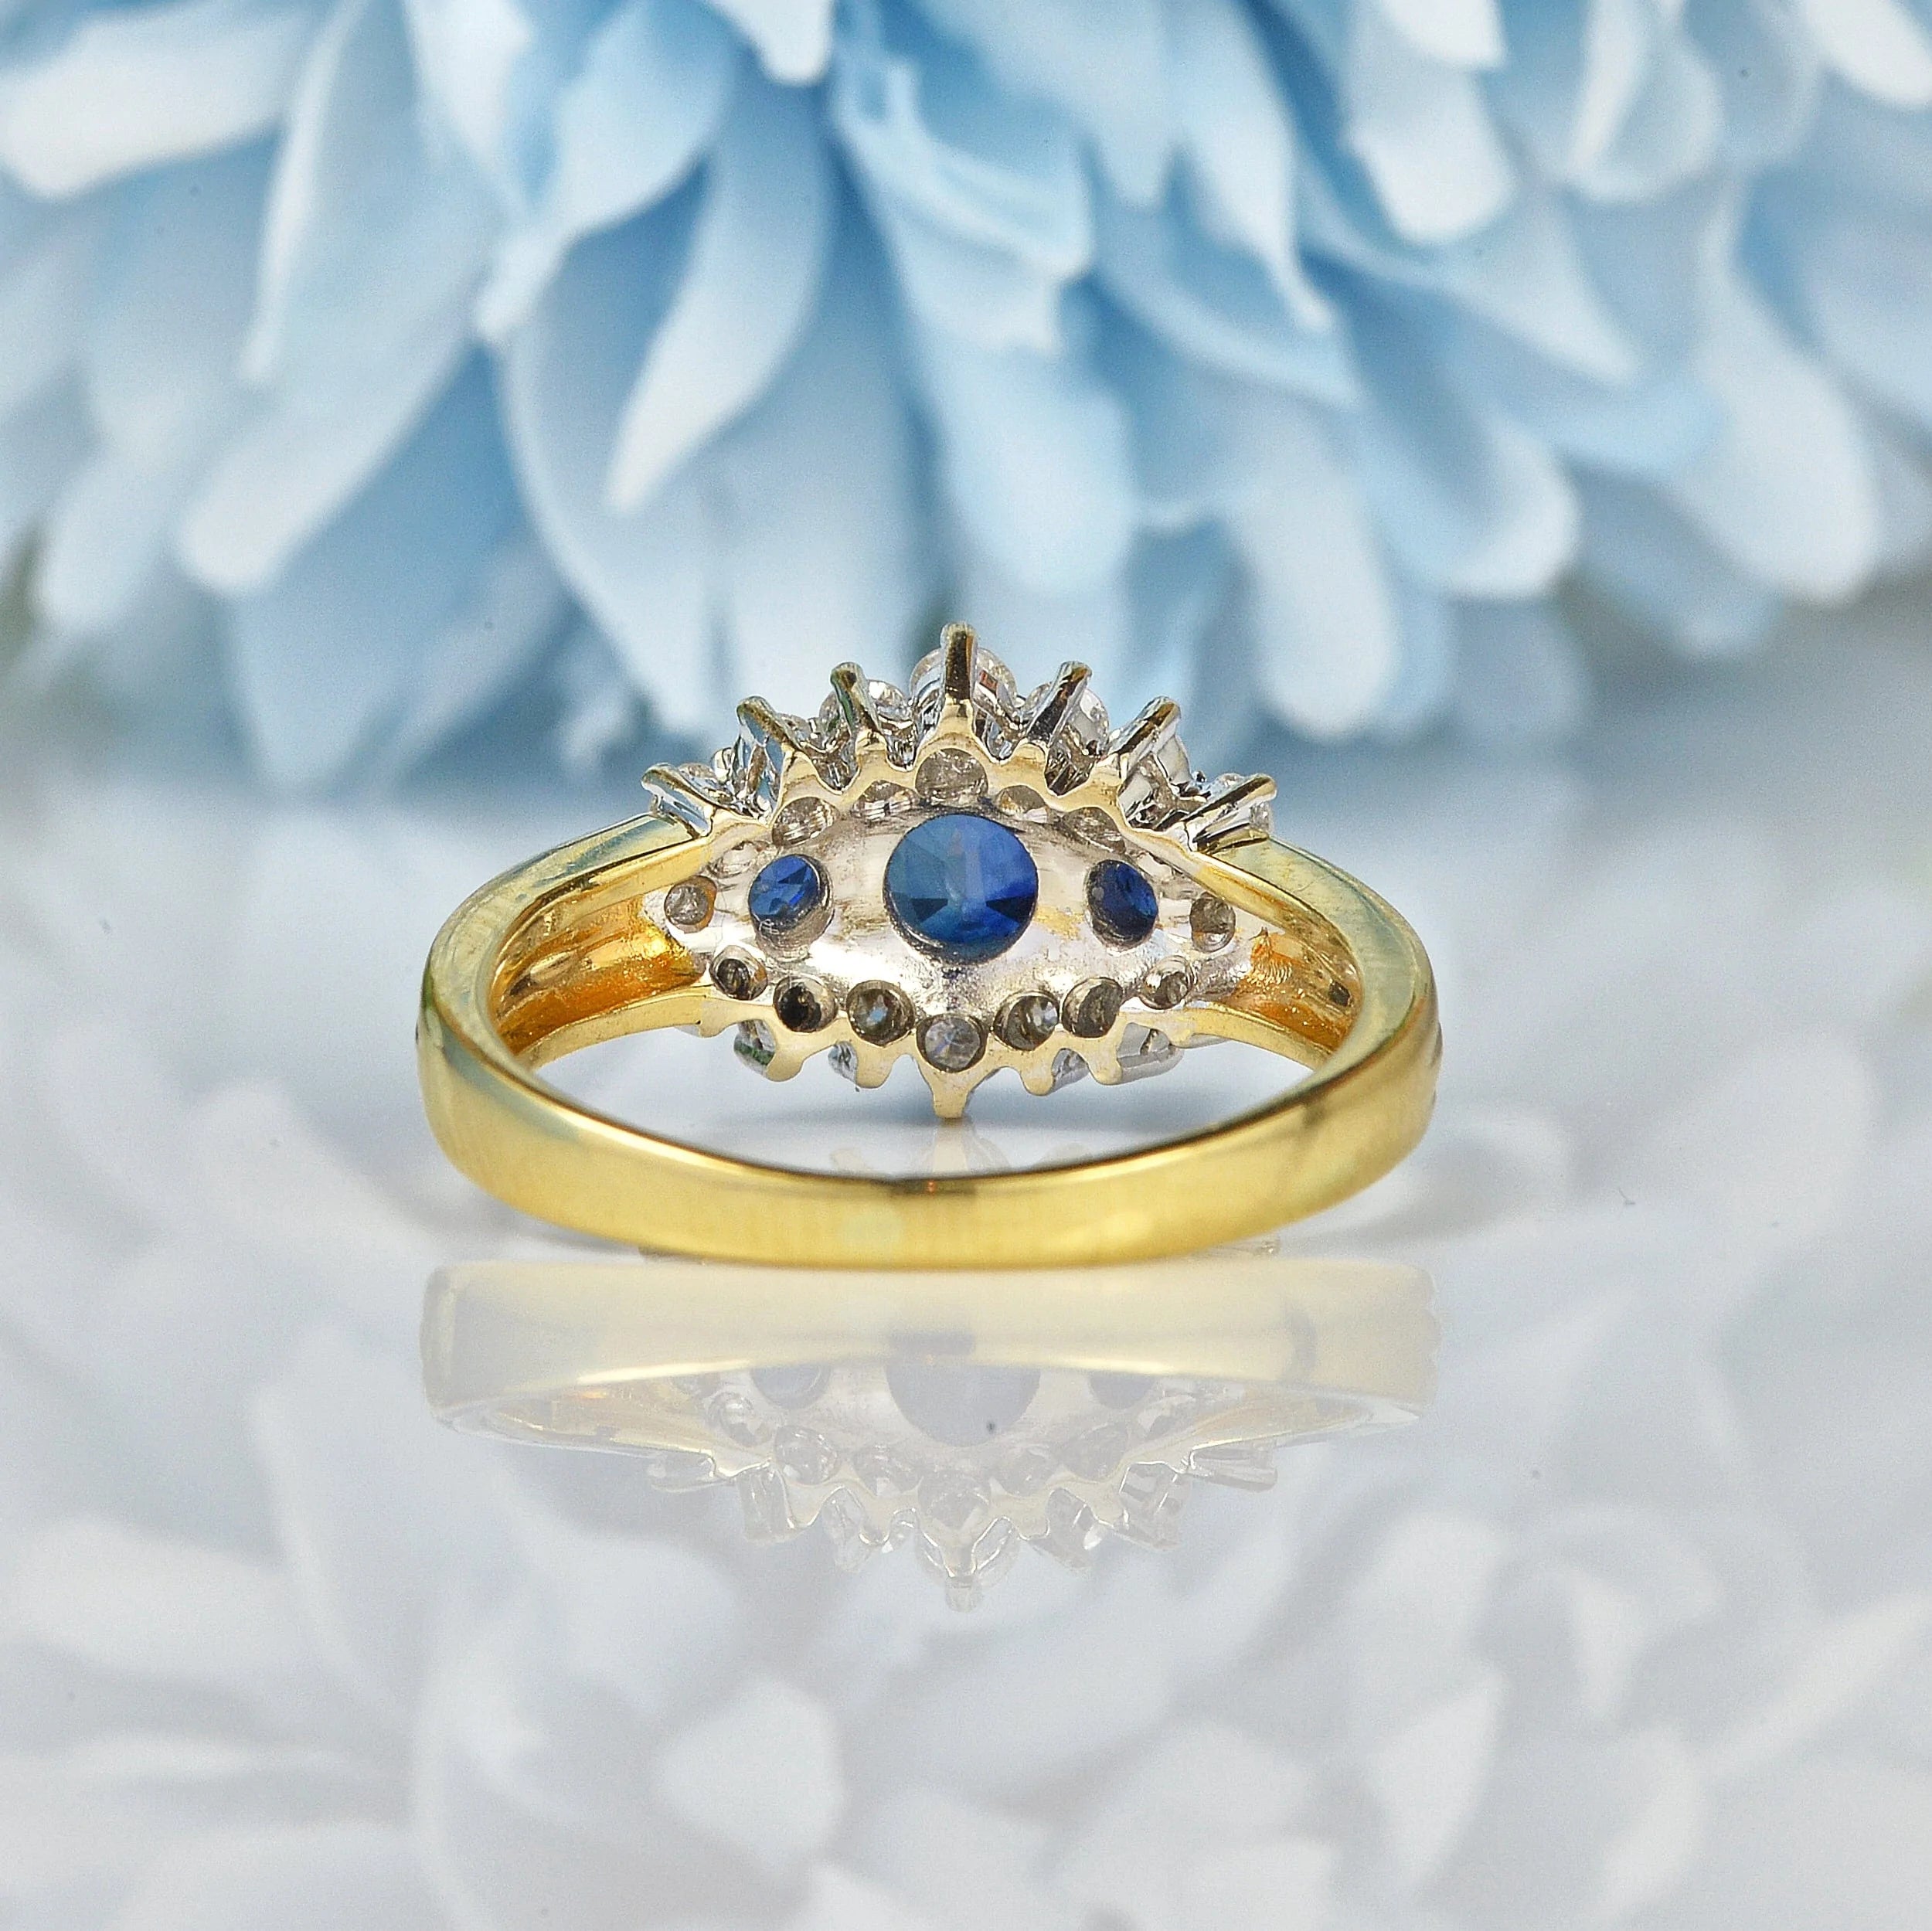 Ellibelle Jewellery VINTAGE SAPPHIRE & DIAMOND TRIPLE CLUSTER RING